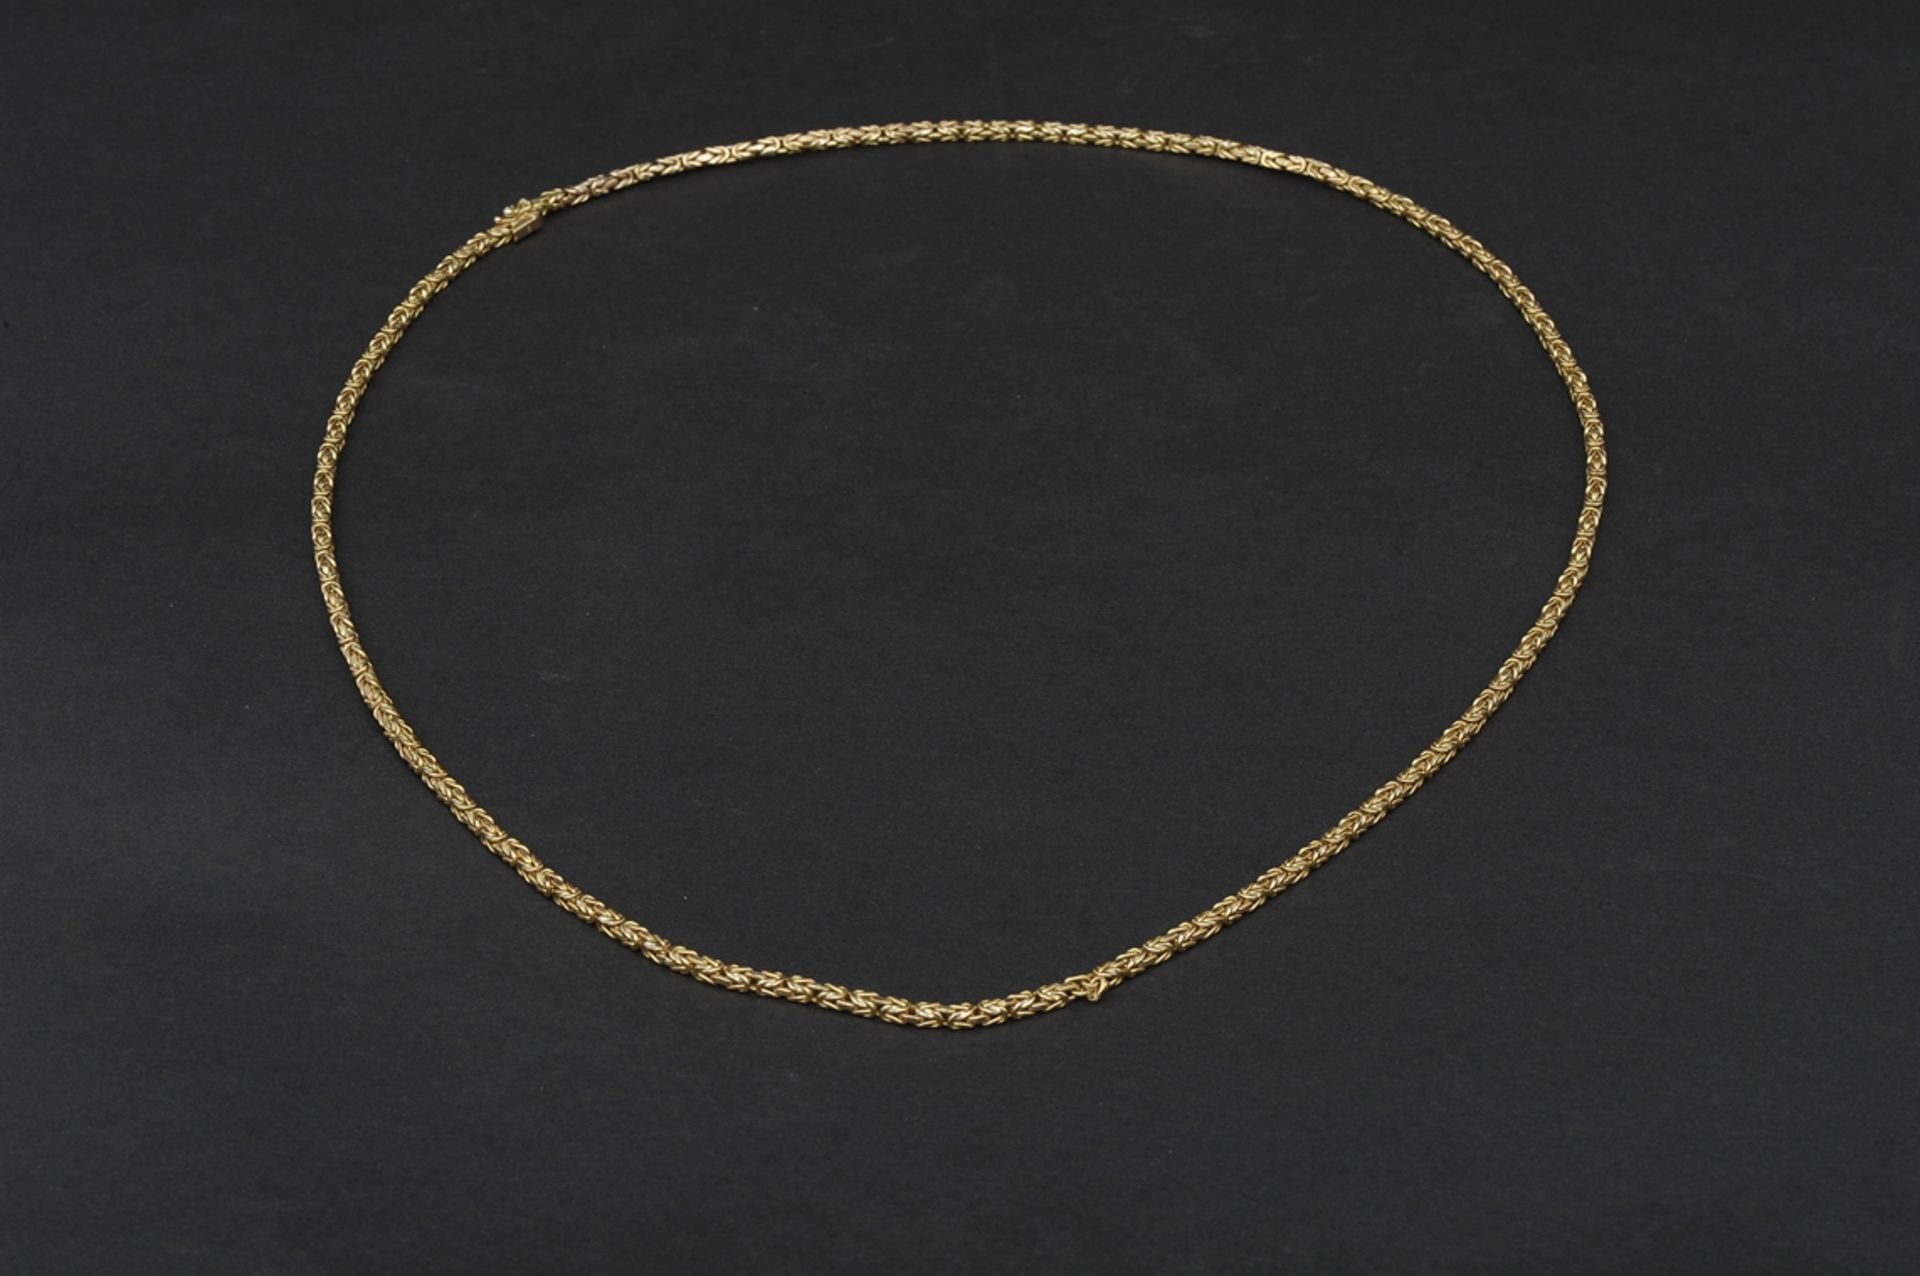 Halskette in 585er Gelbgold, aufwändiger Kettengliederdekor, 1 Stelle leicht aufgebogen, schadhaft. - Image 3 of 9